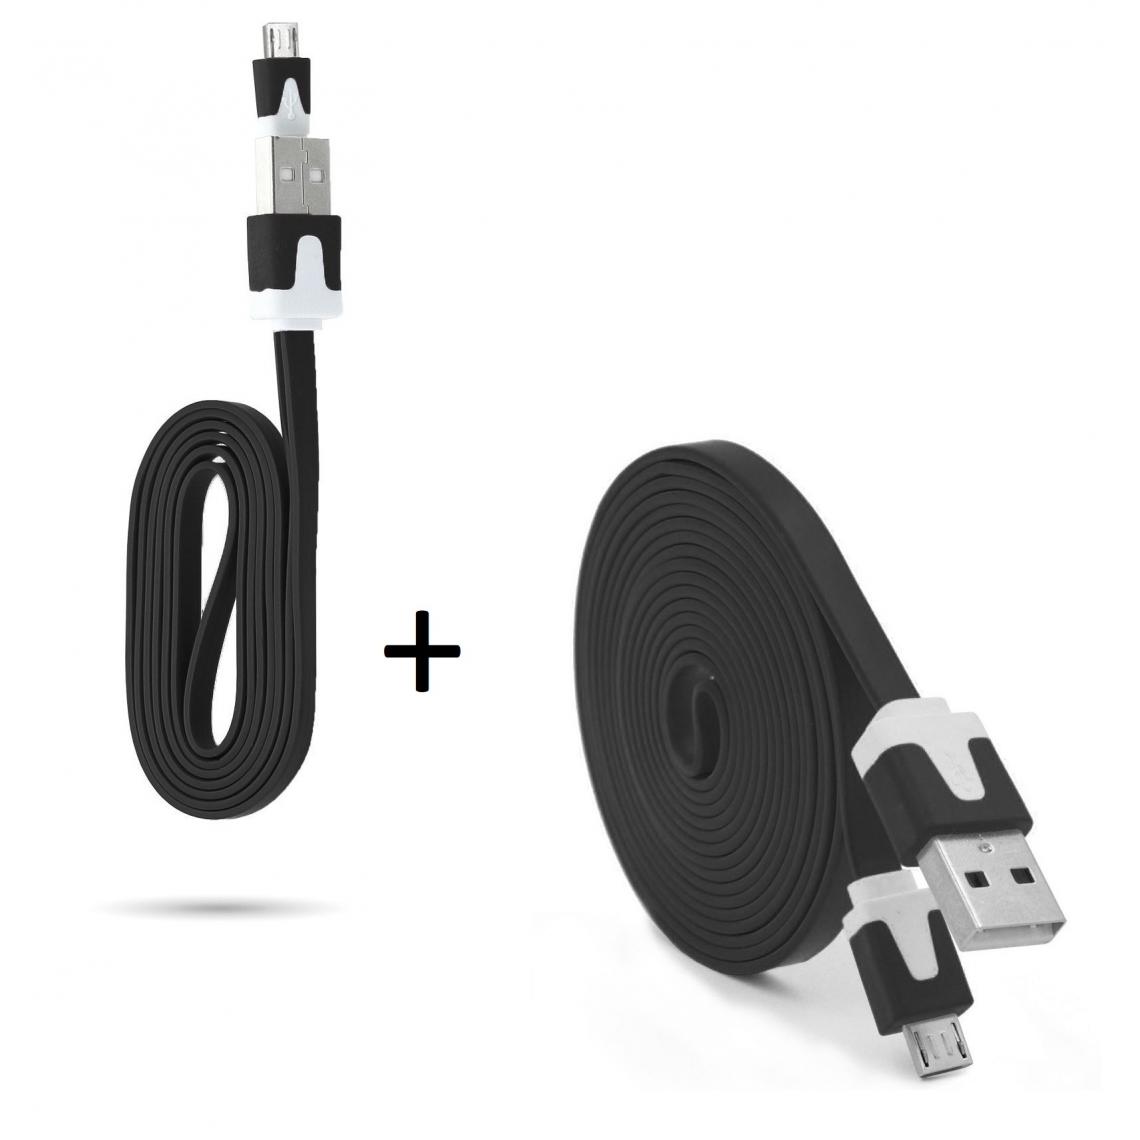 Shot - Pack Chargeur pour "SAMSUNG Galaxy A01" Smartphone Micro USB (Cable Noodle 3m + Cable Noodle 1m) Android (NOIR) - Chargeur secteur téléphone